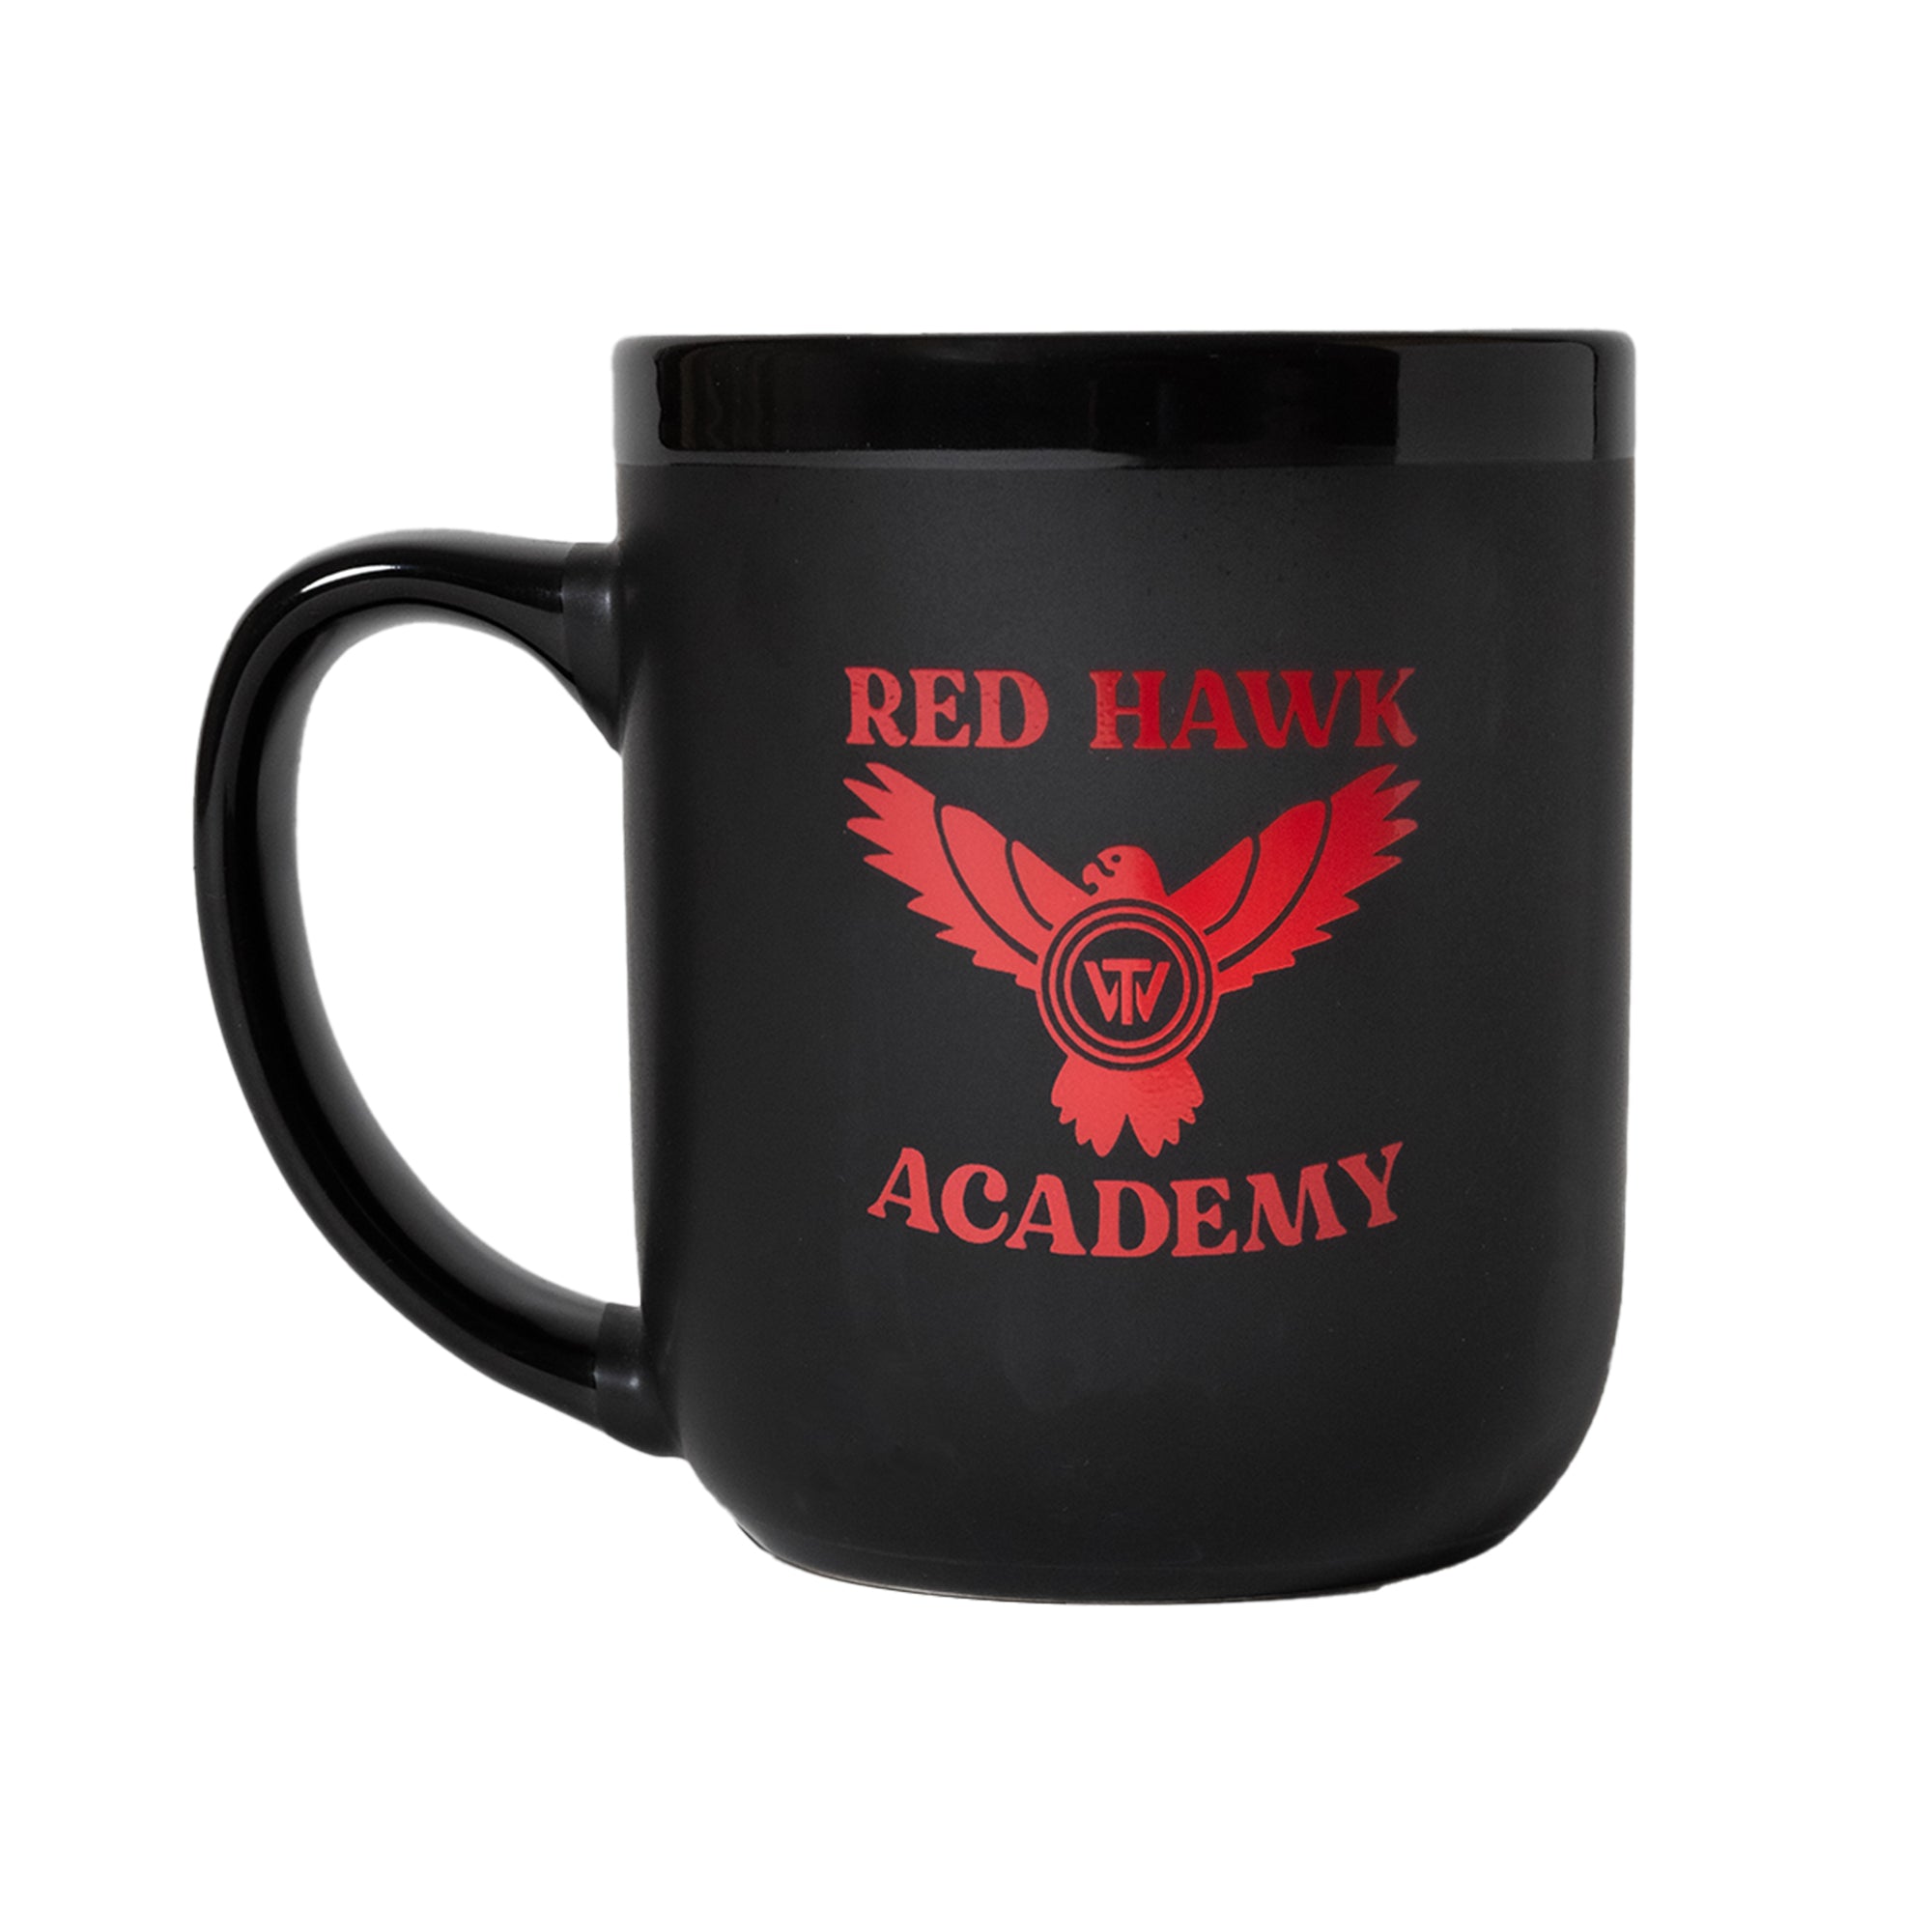 Redhawk Academy Mug